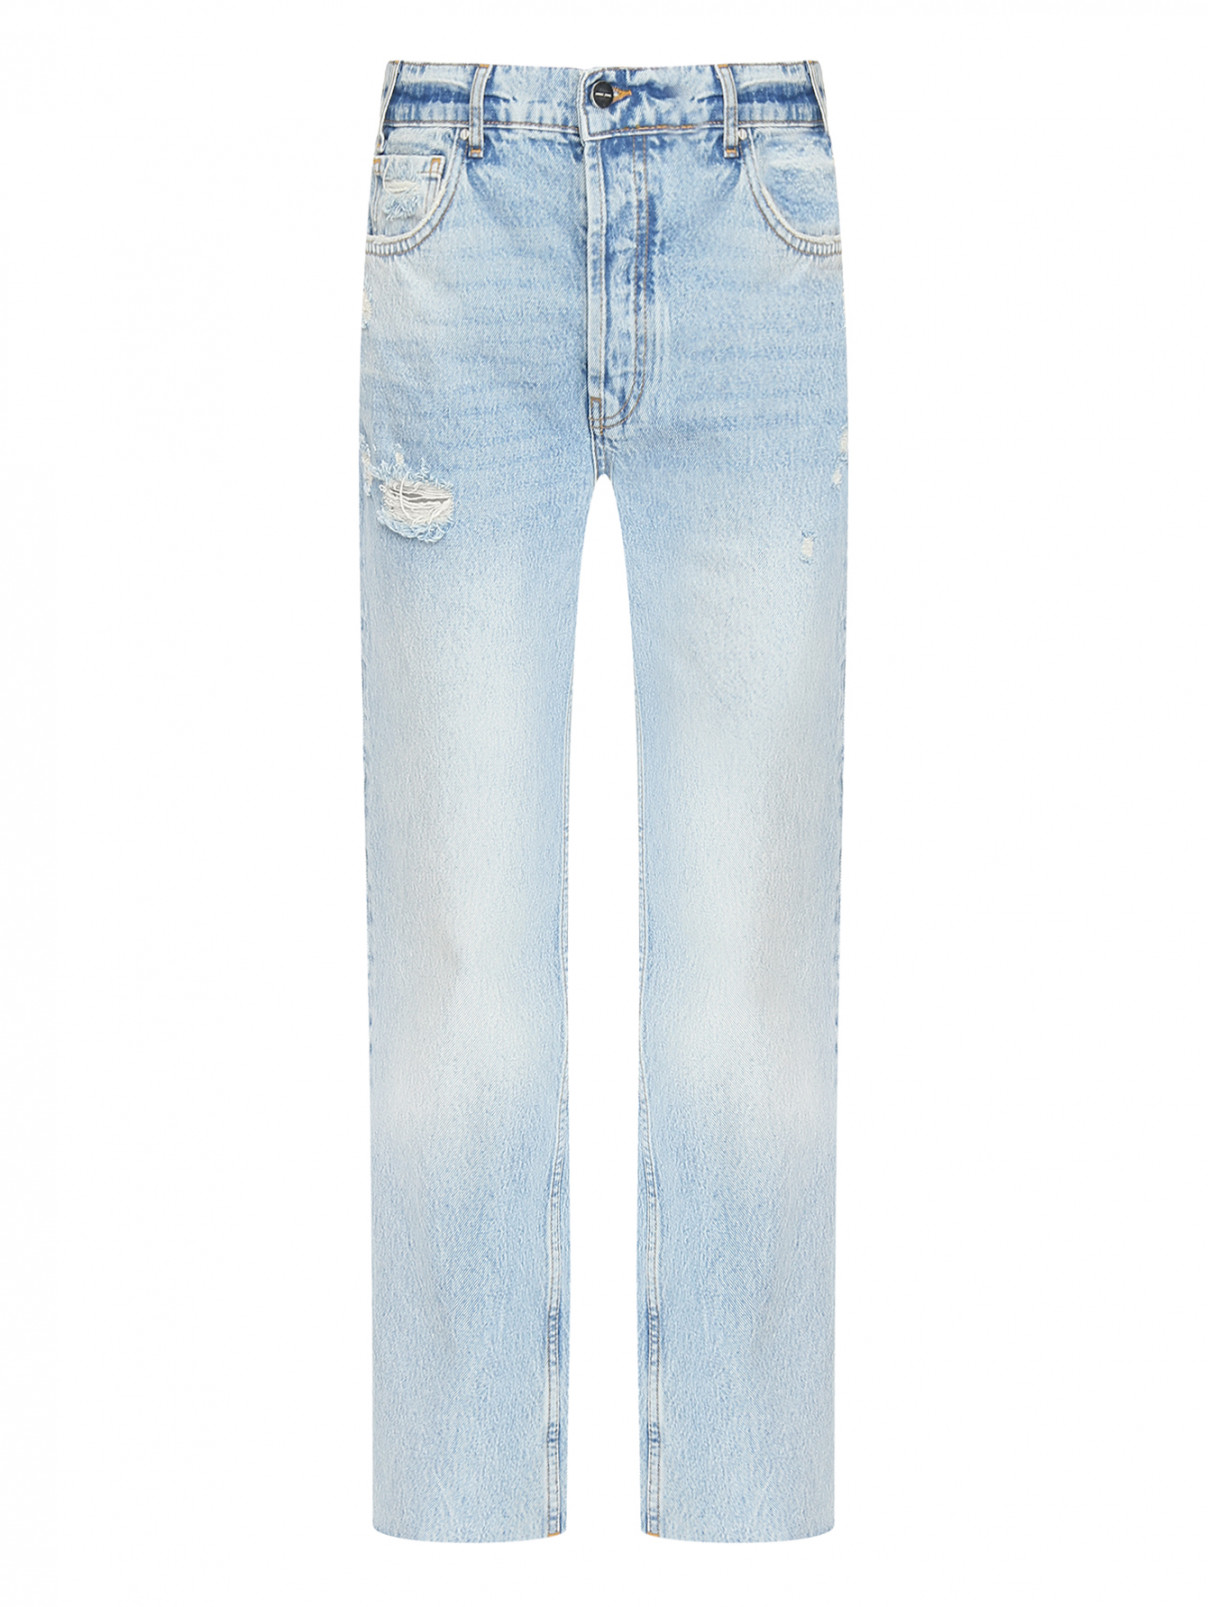 Широкие джинсы из хлопка с карманами Anine Bing  –  Общий вид  – Цвет:  Синий